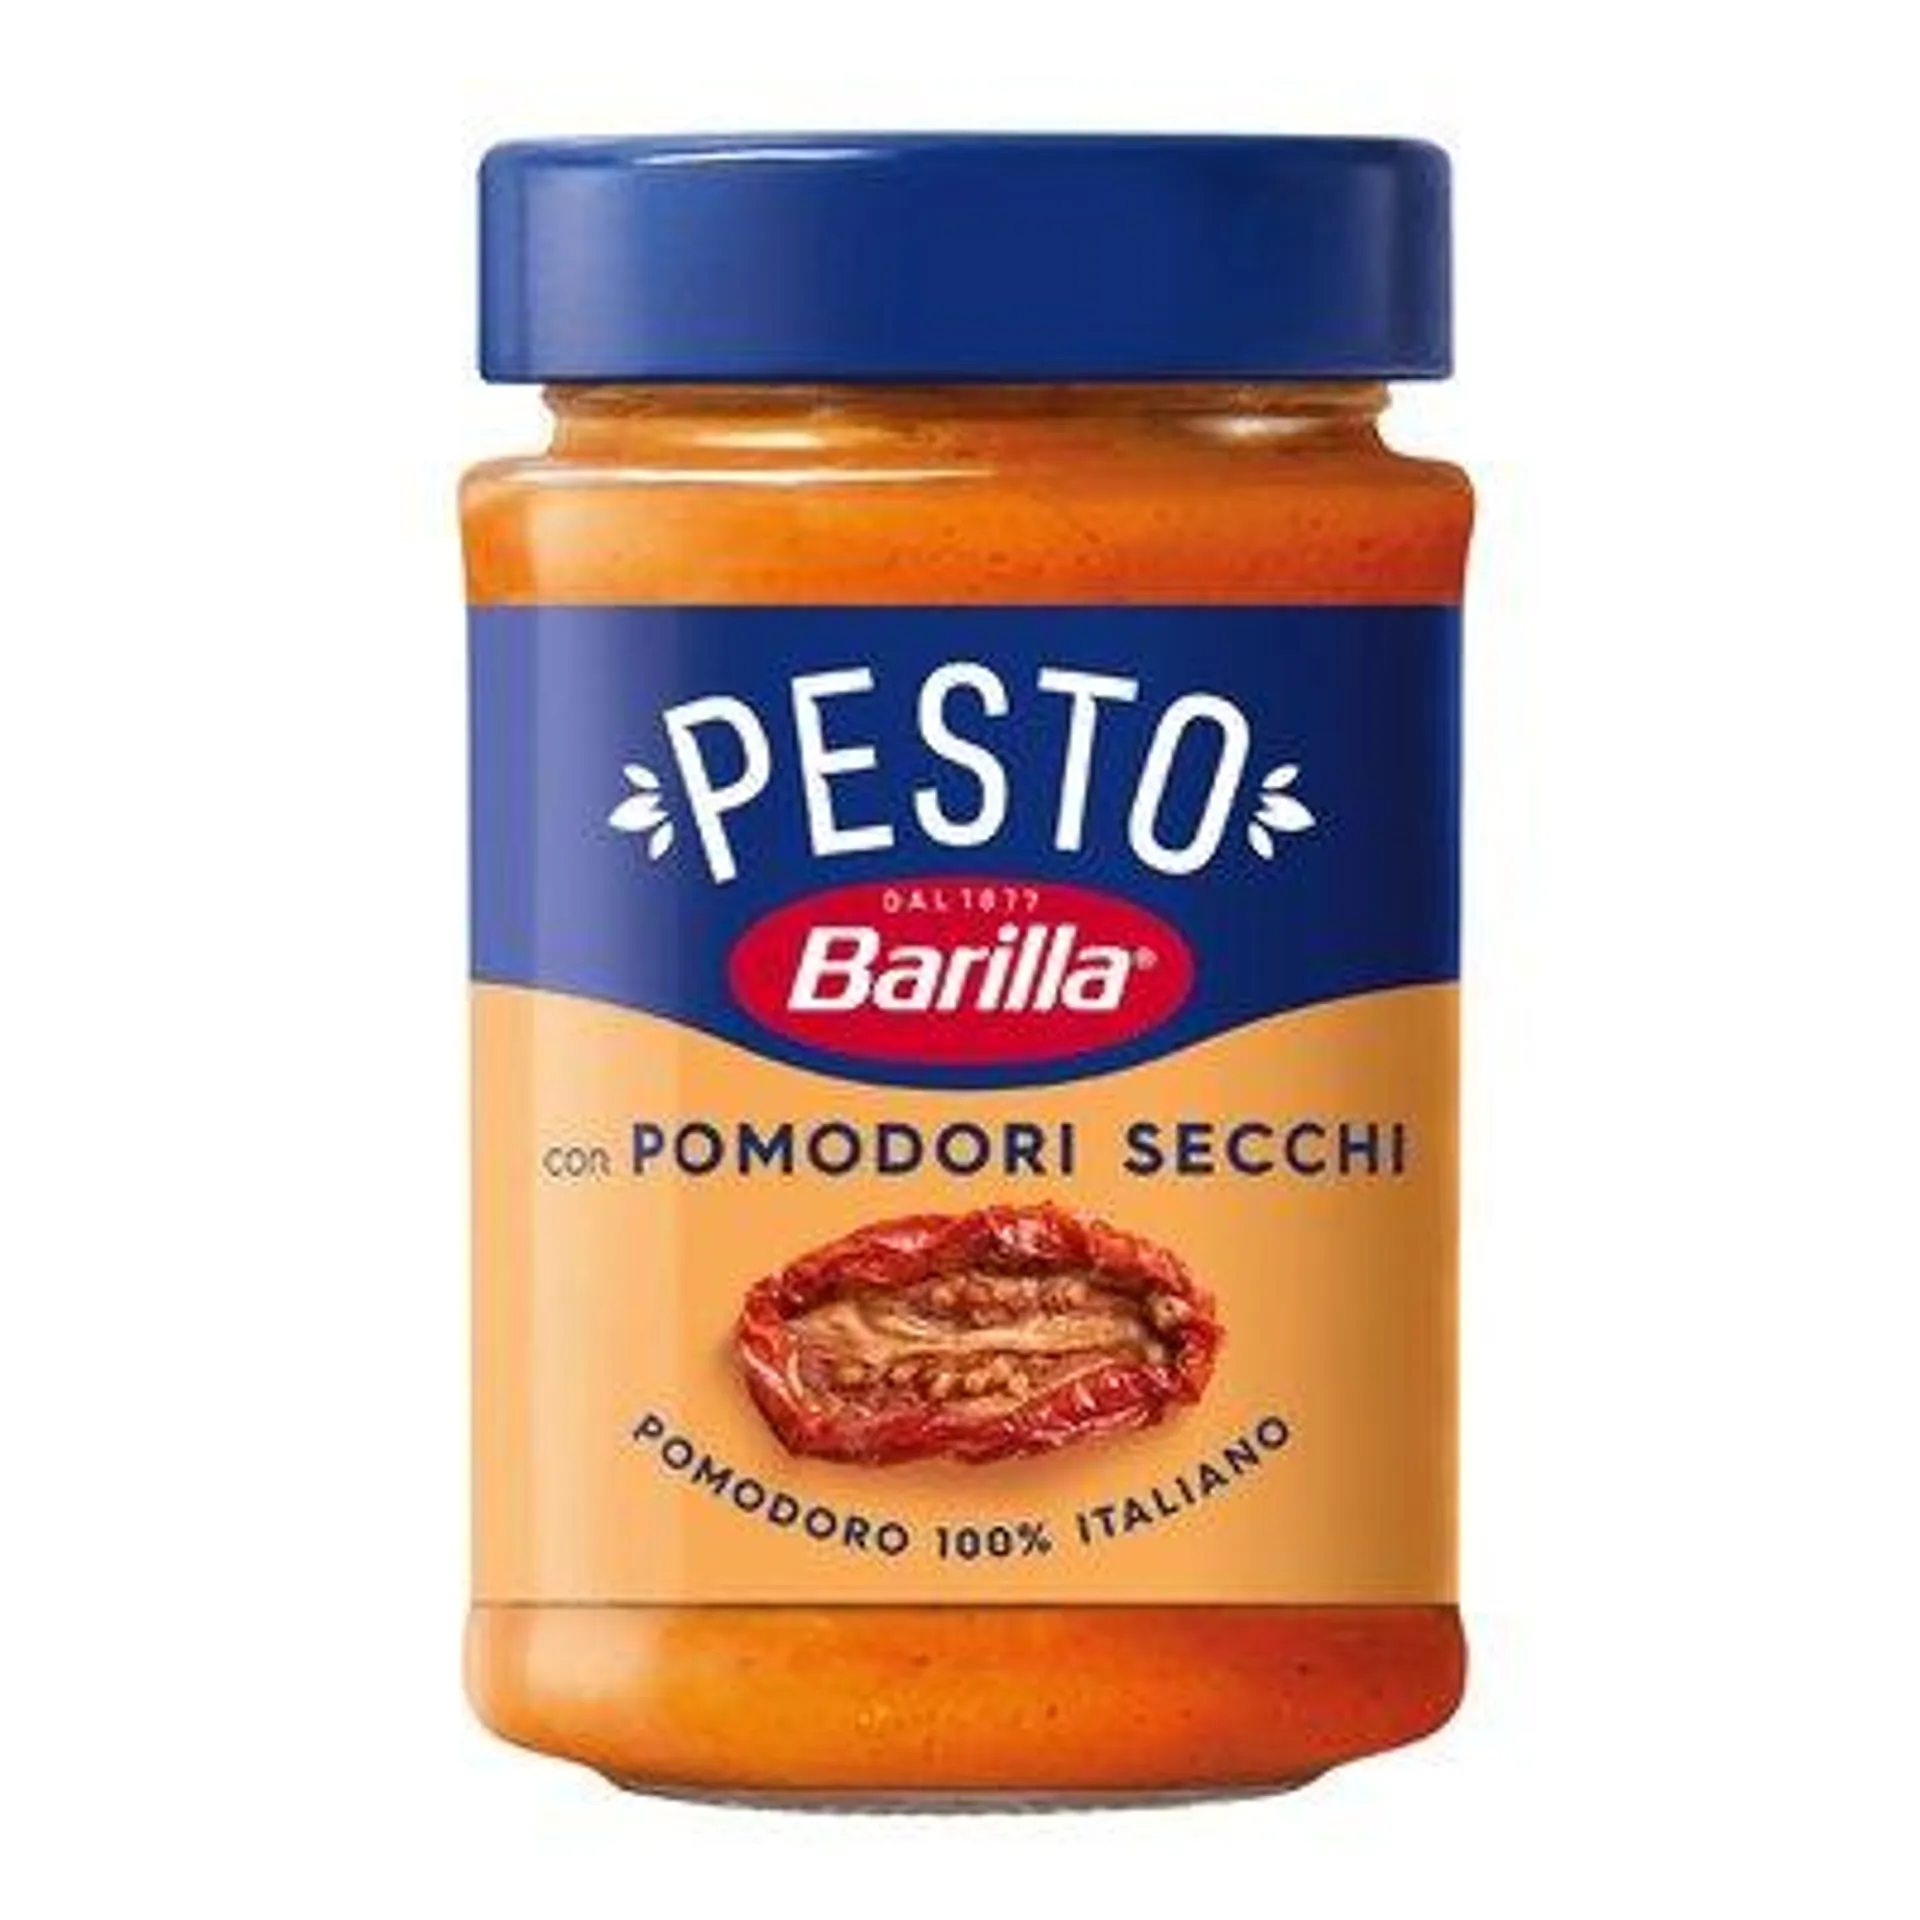 Barilla Pesto Pomodori Secchi